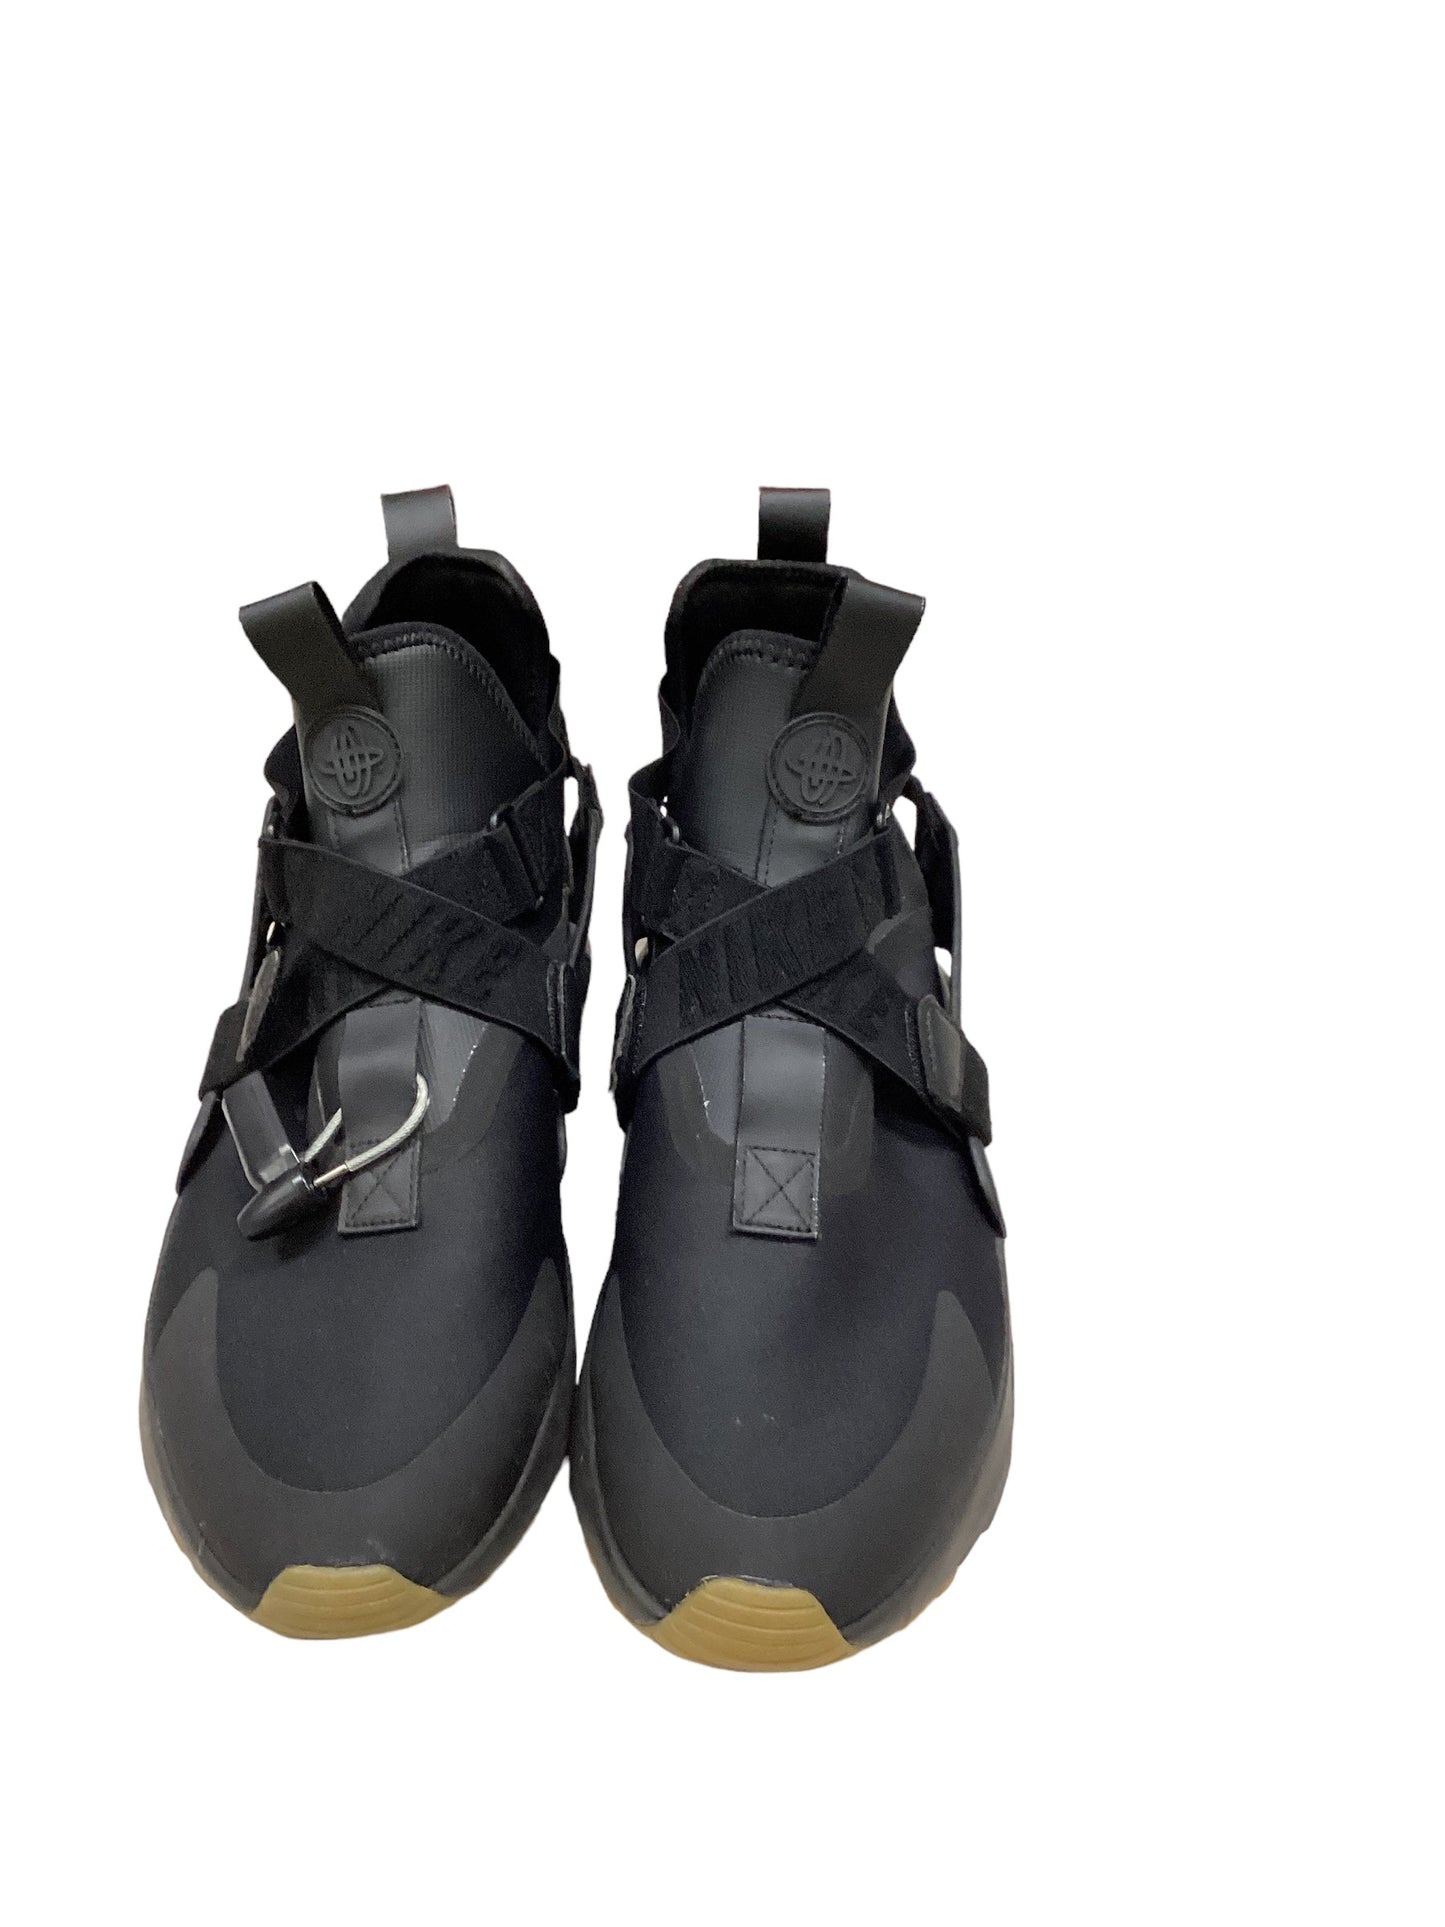 Black Shoes Athletic Nike, Size 12